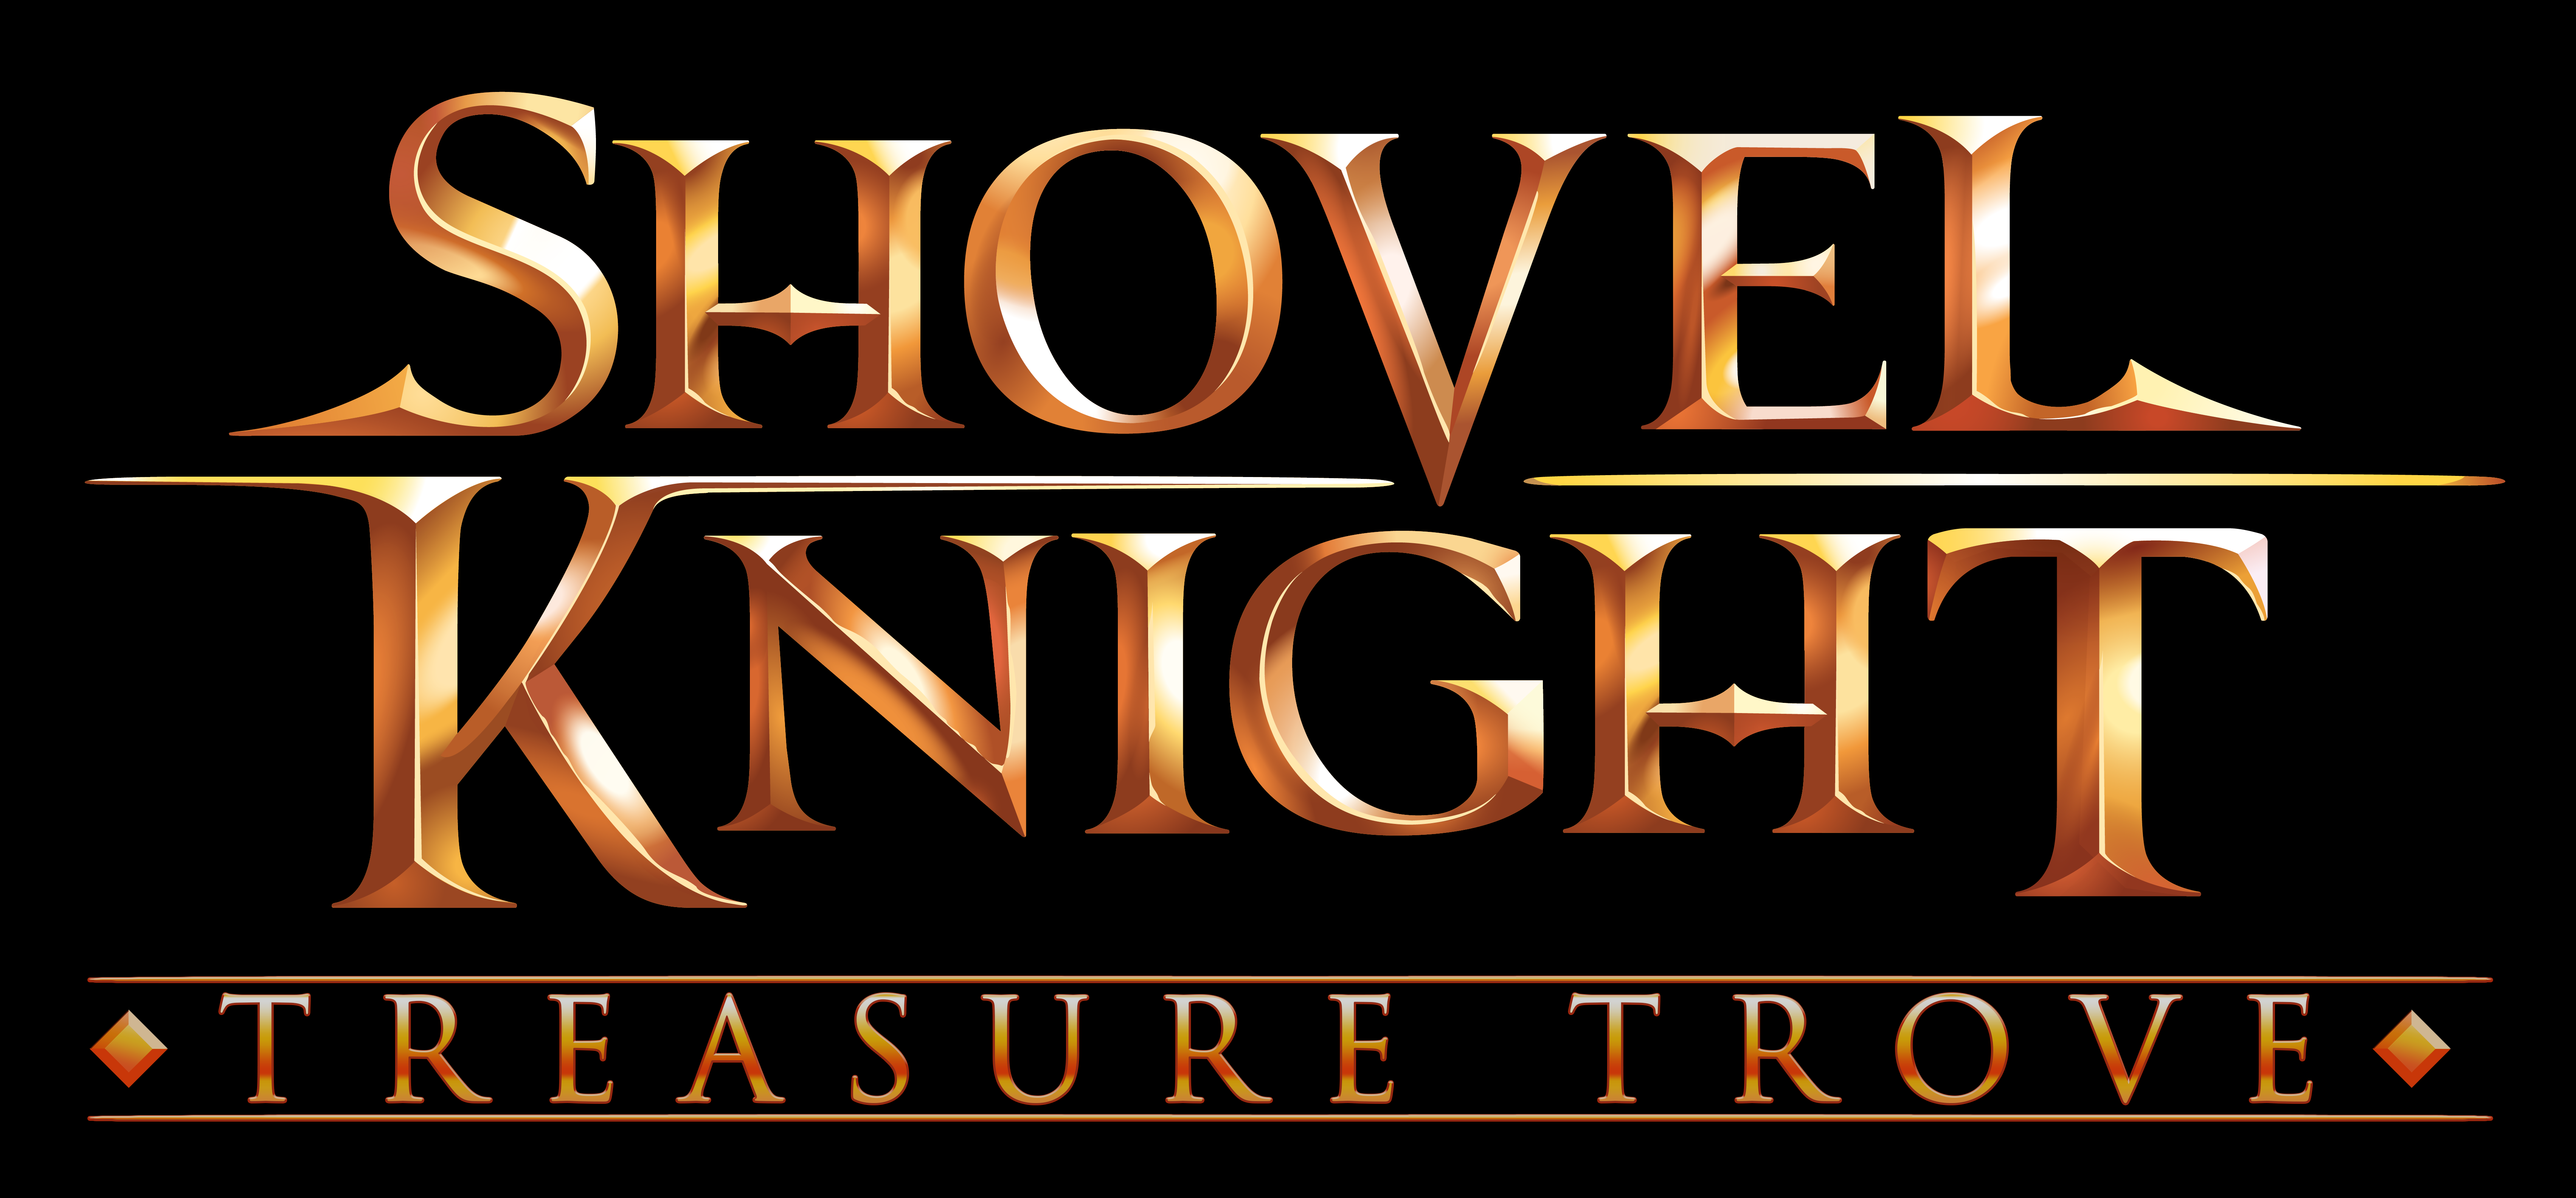 shovel knight treasure trove free download for mac